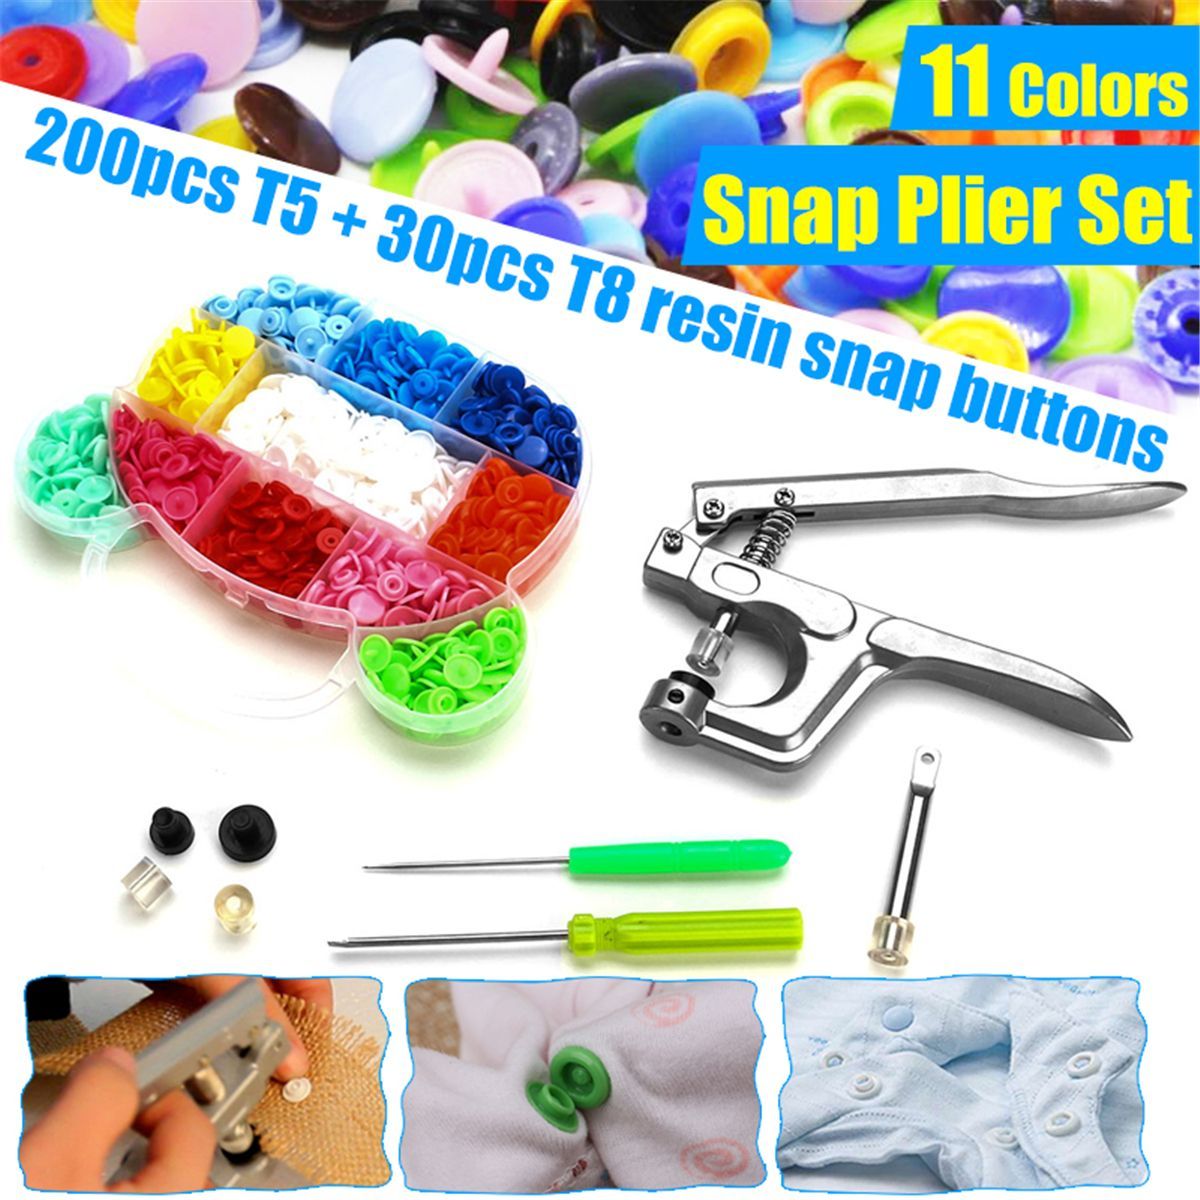 DIY-Snap-Pliers--200-Pcs-T5--30-Pcs-T8-Snap-Resin-Buttons-Fastener-11-Colors-1744441